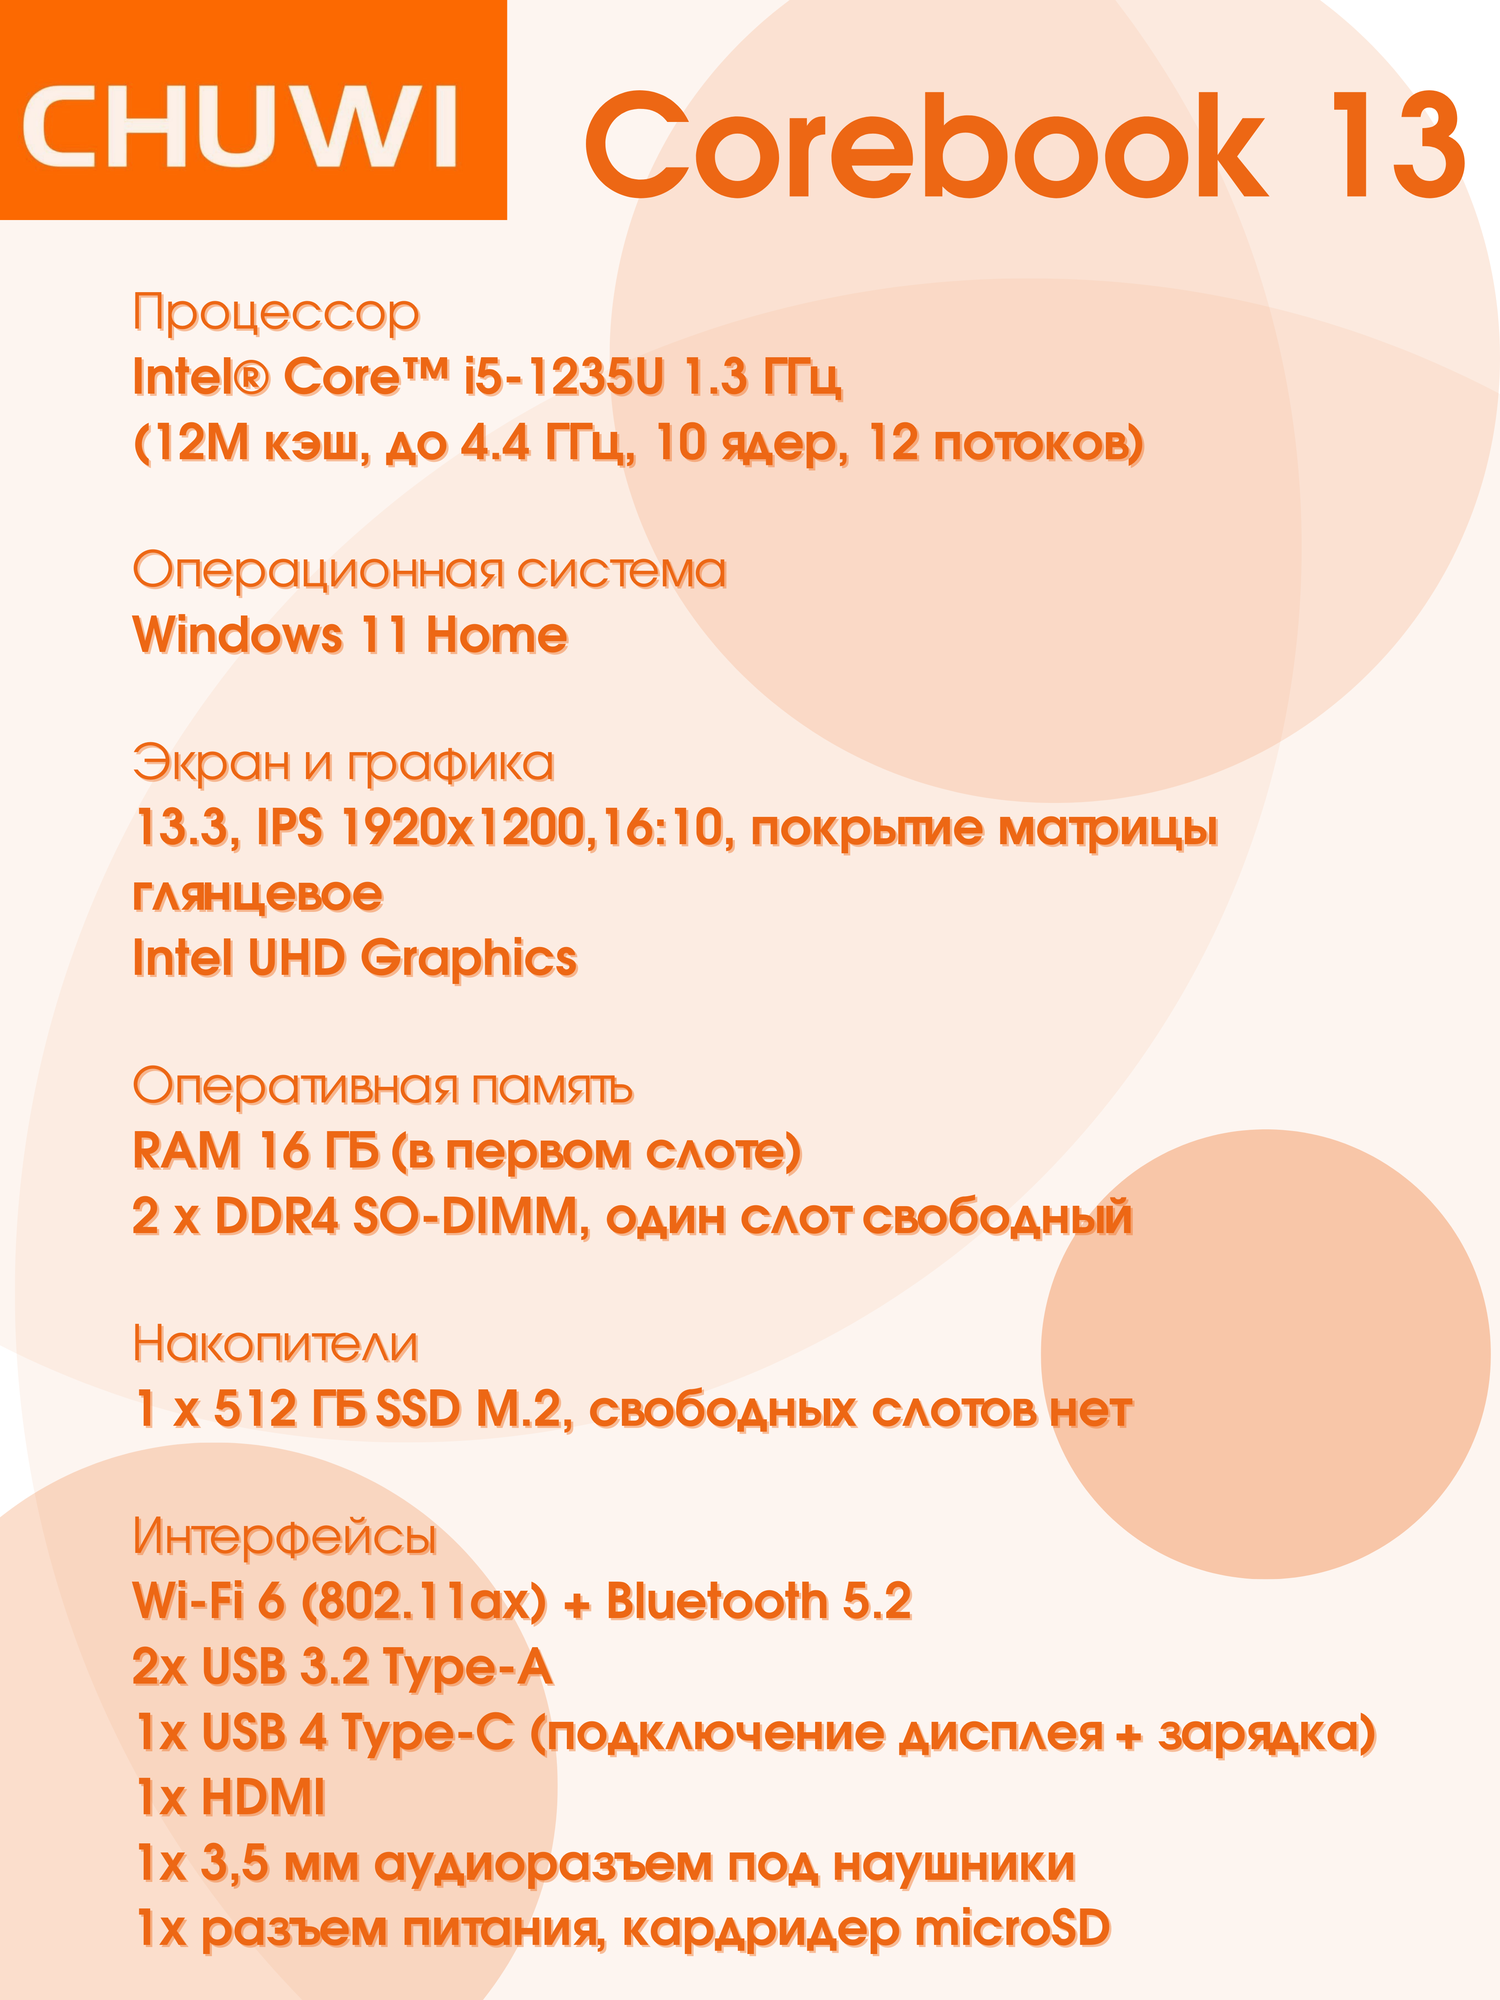 13.3" Ультрабук CHUWI COREBOOK, Intel Core i5 1235U (1.3 ГГц), RAM 16 ГБ, SSD 512 ГБ, 1920x1200 IPS, Intel UHD Graphics, Windows Home, CWI621-521E5N1HDNXX, серый, русская раскладка + мышь